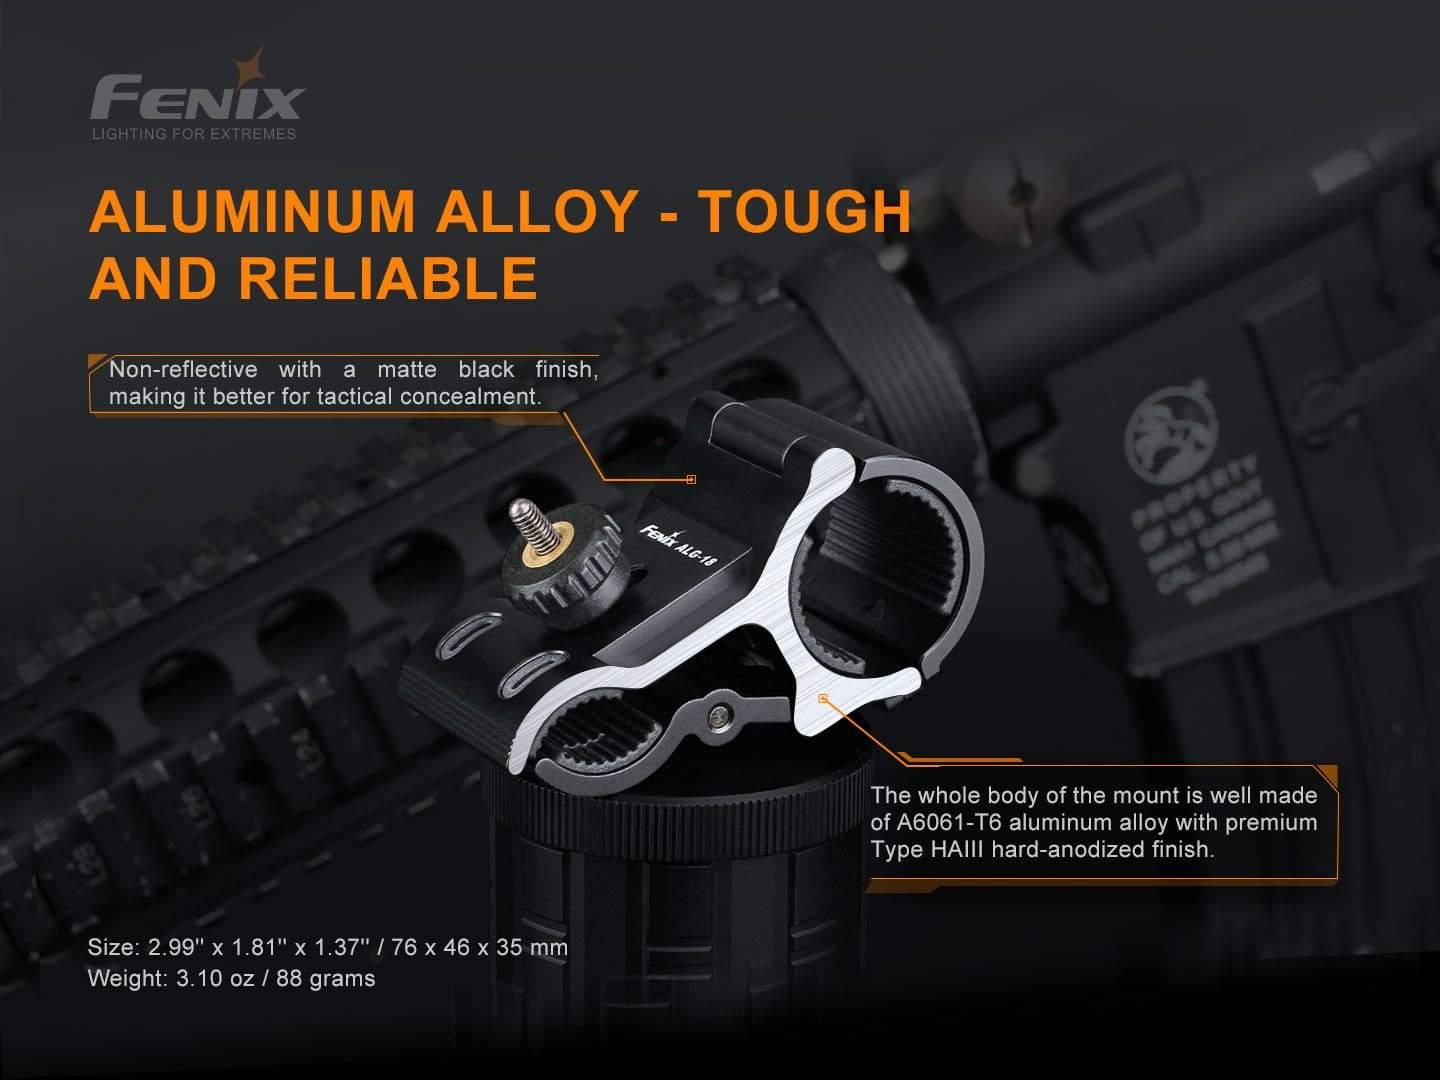 Fenix ALG-18 support de baril de fusil pour lampe torche Site Officiel FENIX® - Votre boutique en ligne Fenix®